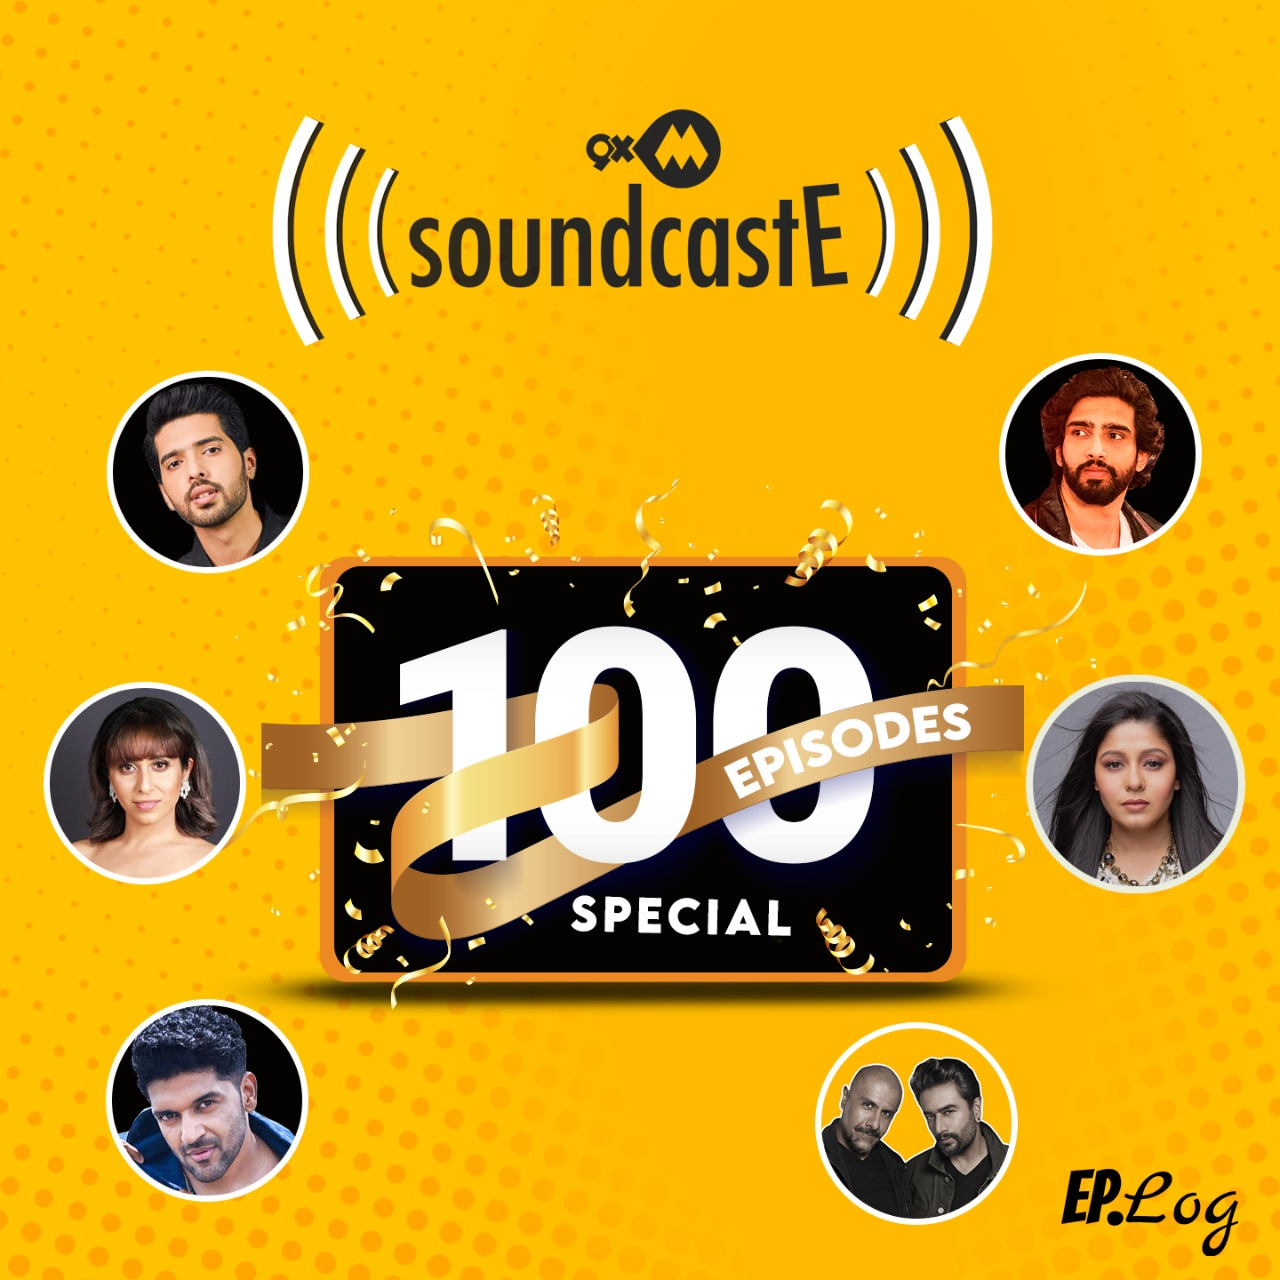 9XM SoundcastE  100 Episodes Special